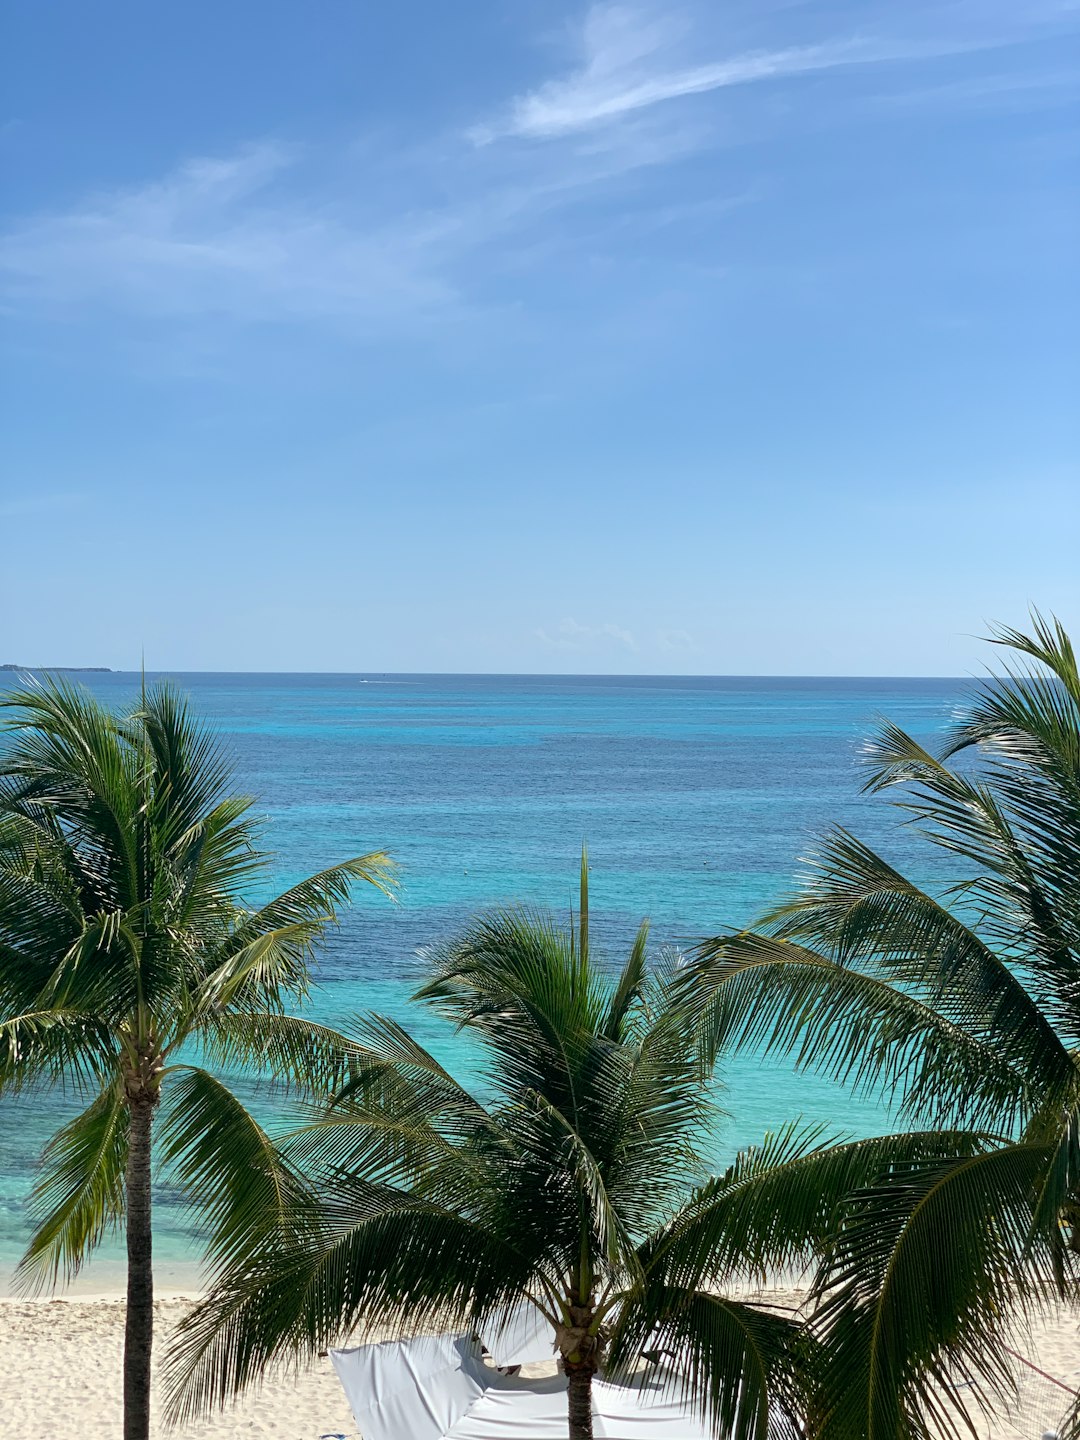 Tropics photo spot Punta Cancun Akumal